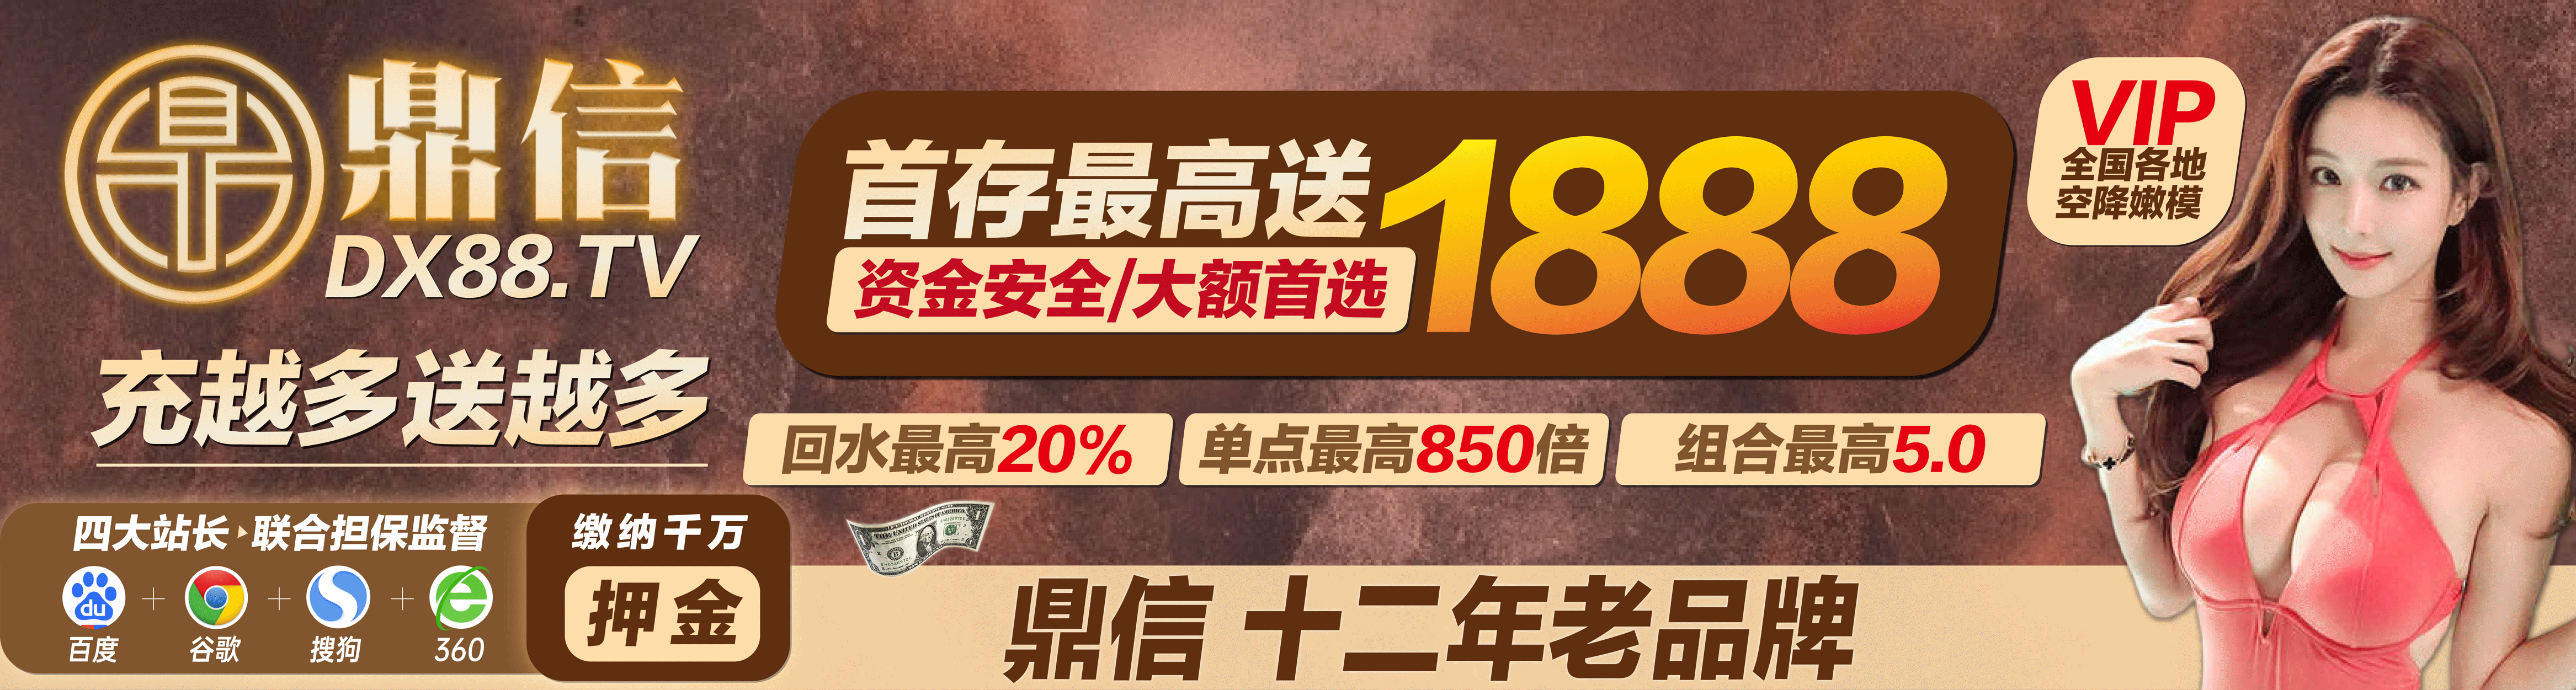 台湾宾果pc28最新预测开奖结果网